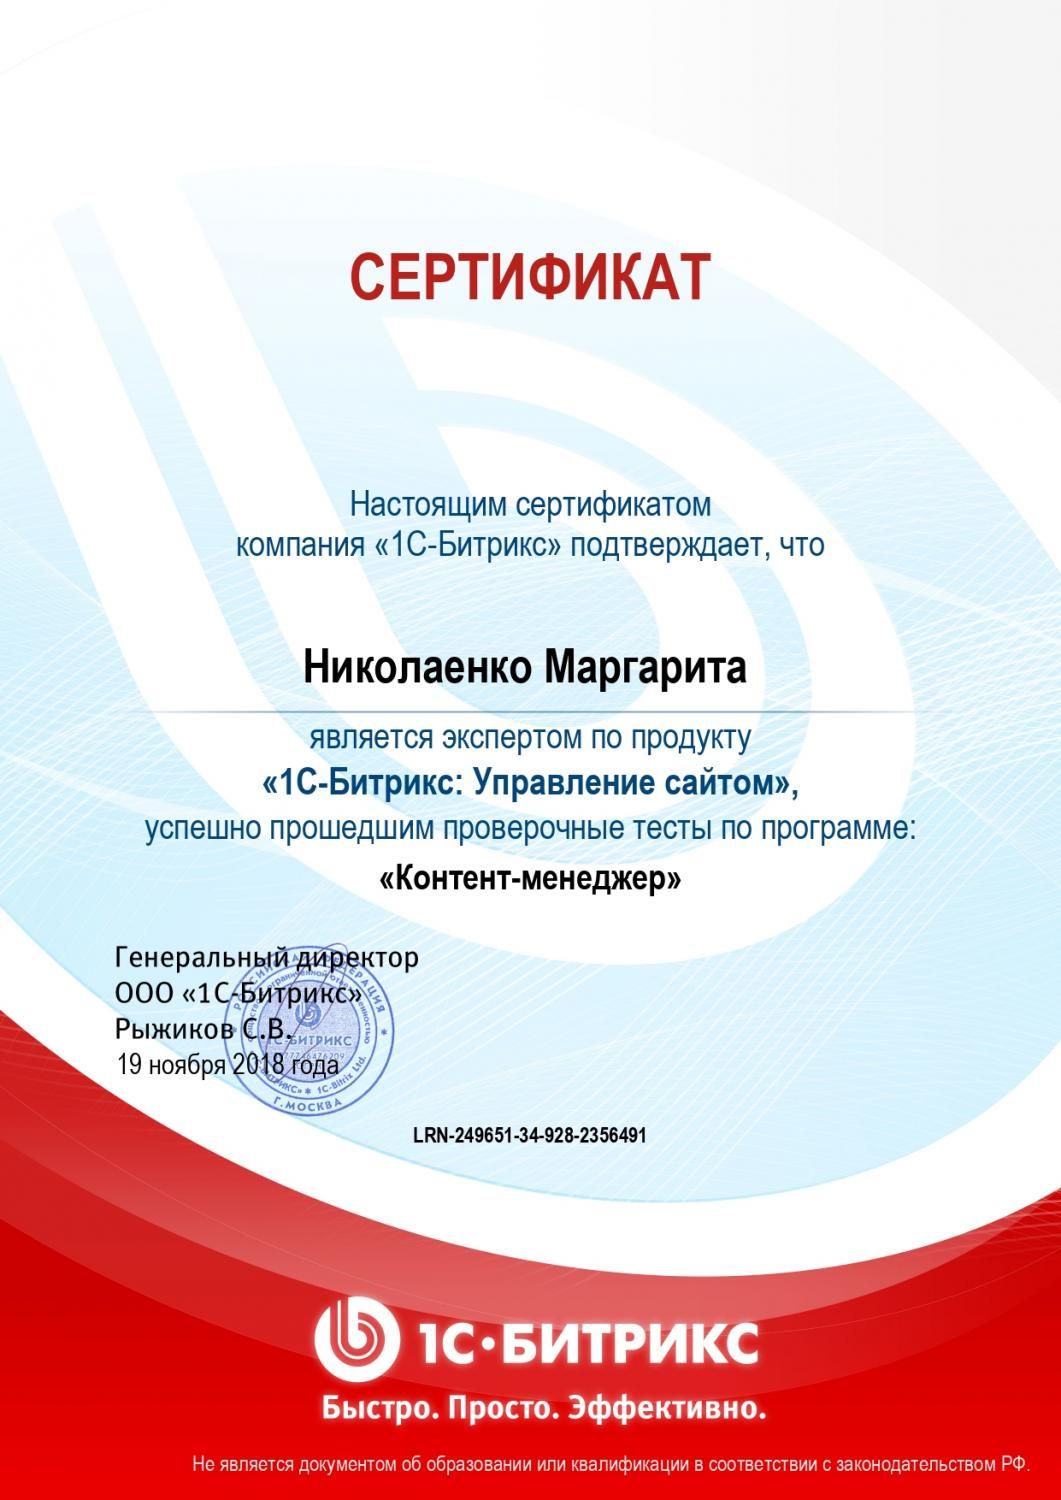 Сертификат эксперта по программе "Контент-менеджер" - Николаенко М. в Твери